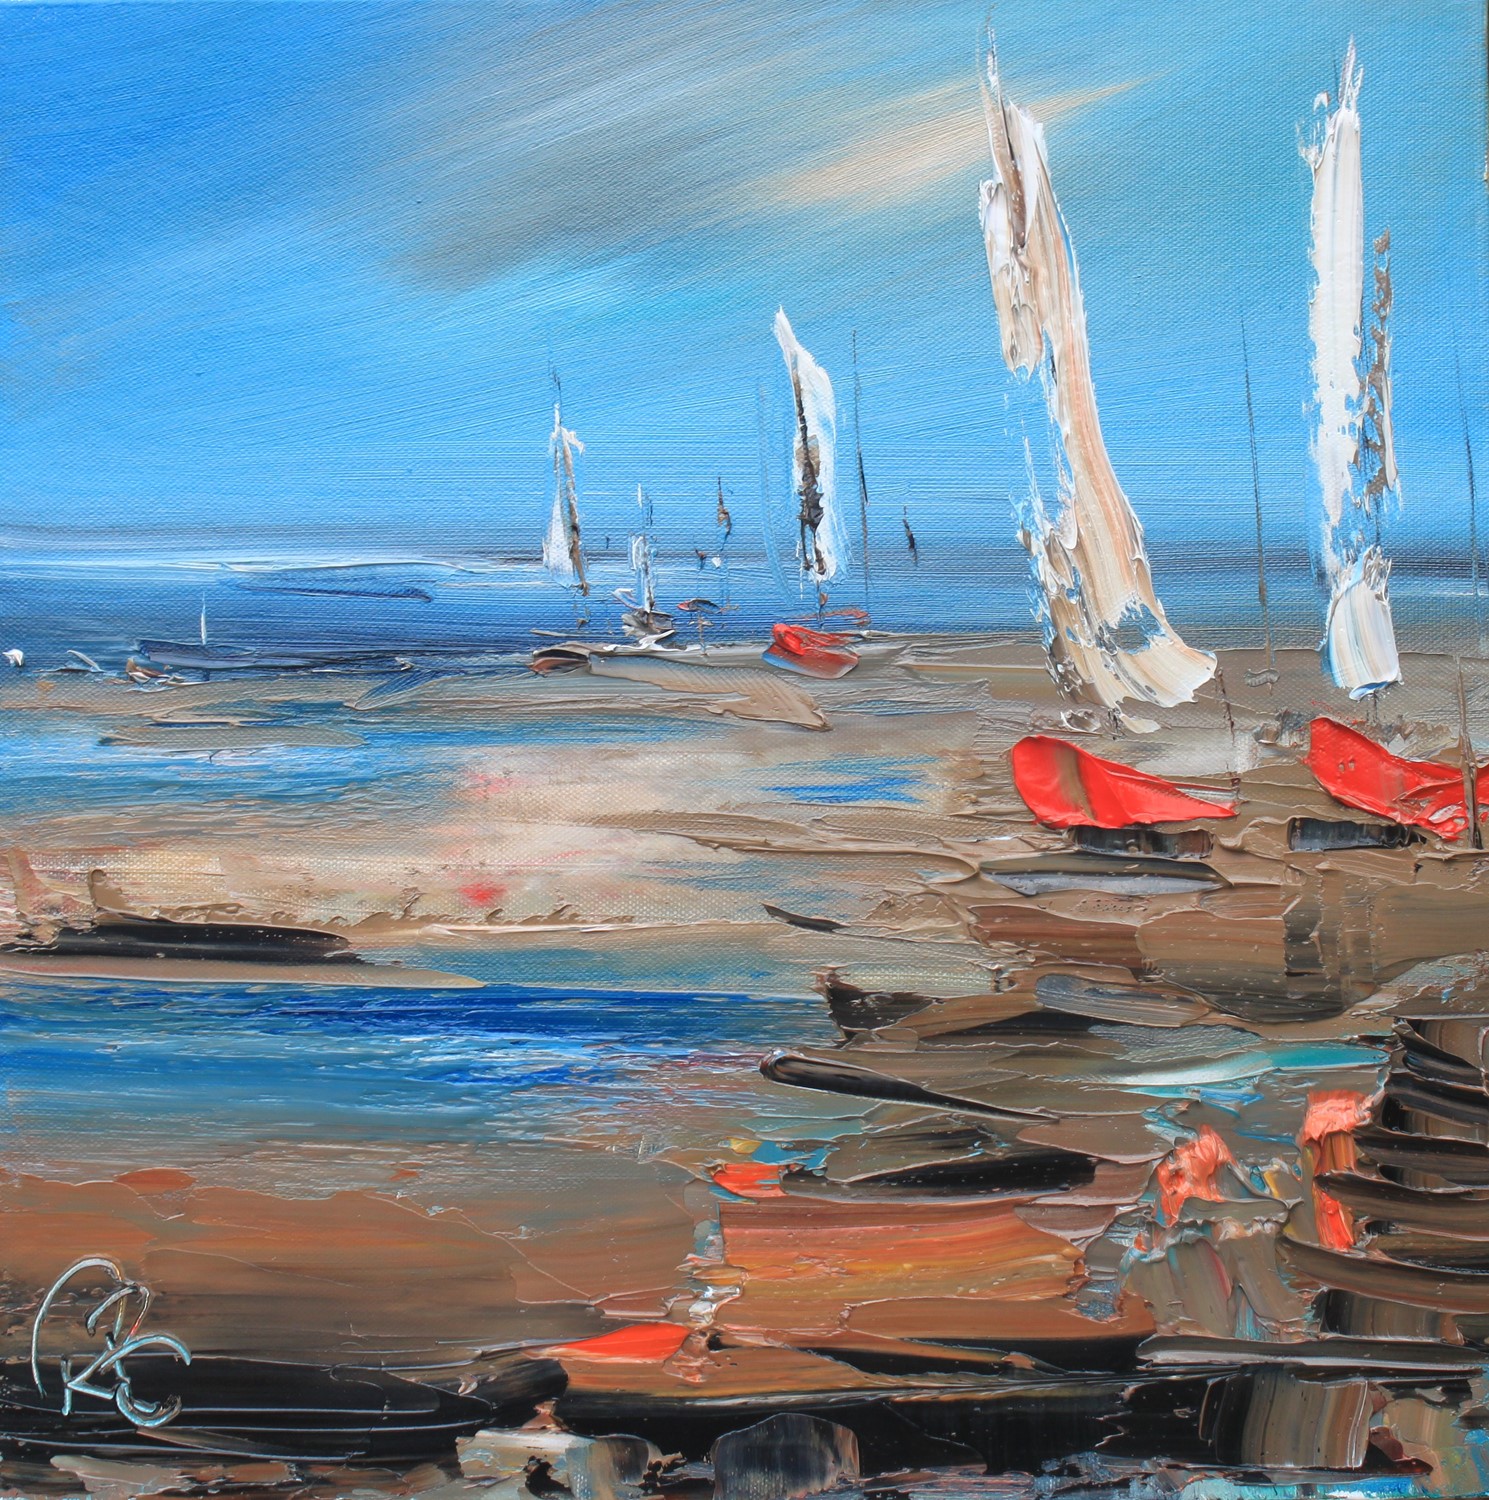 'Sails Ashore' by artist Rosanne Barr